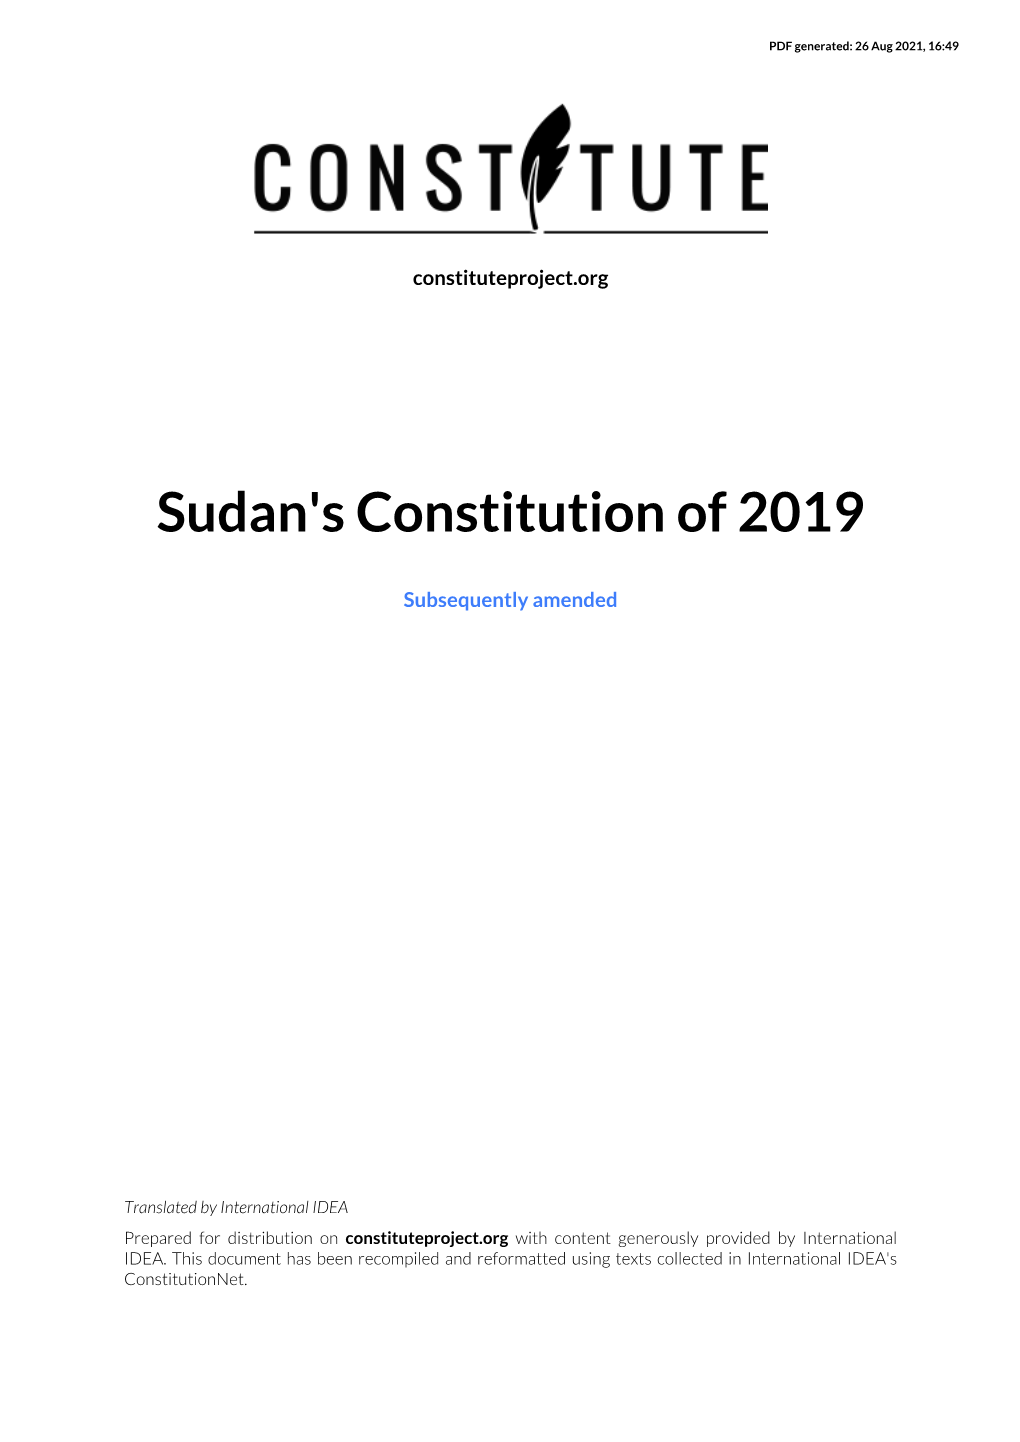 Sudan's Constitution of 2019